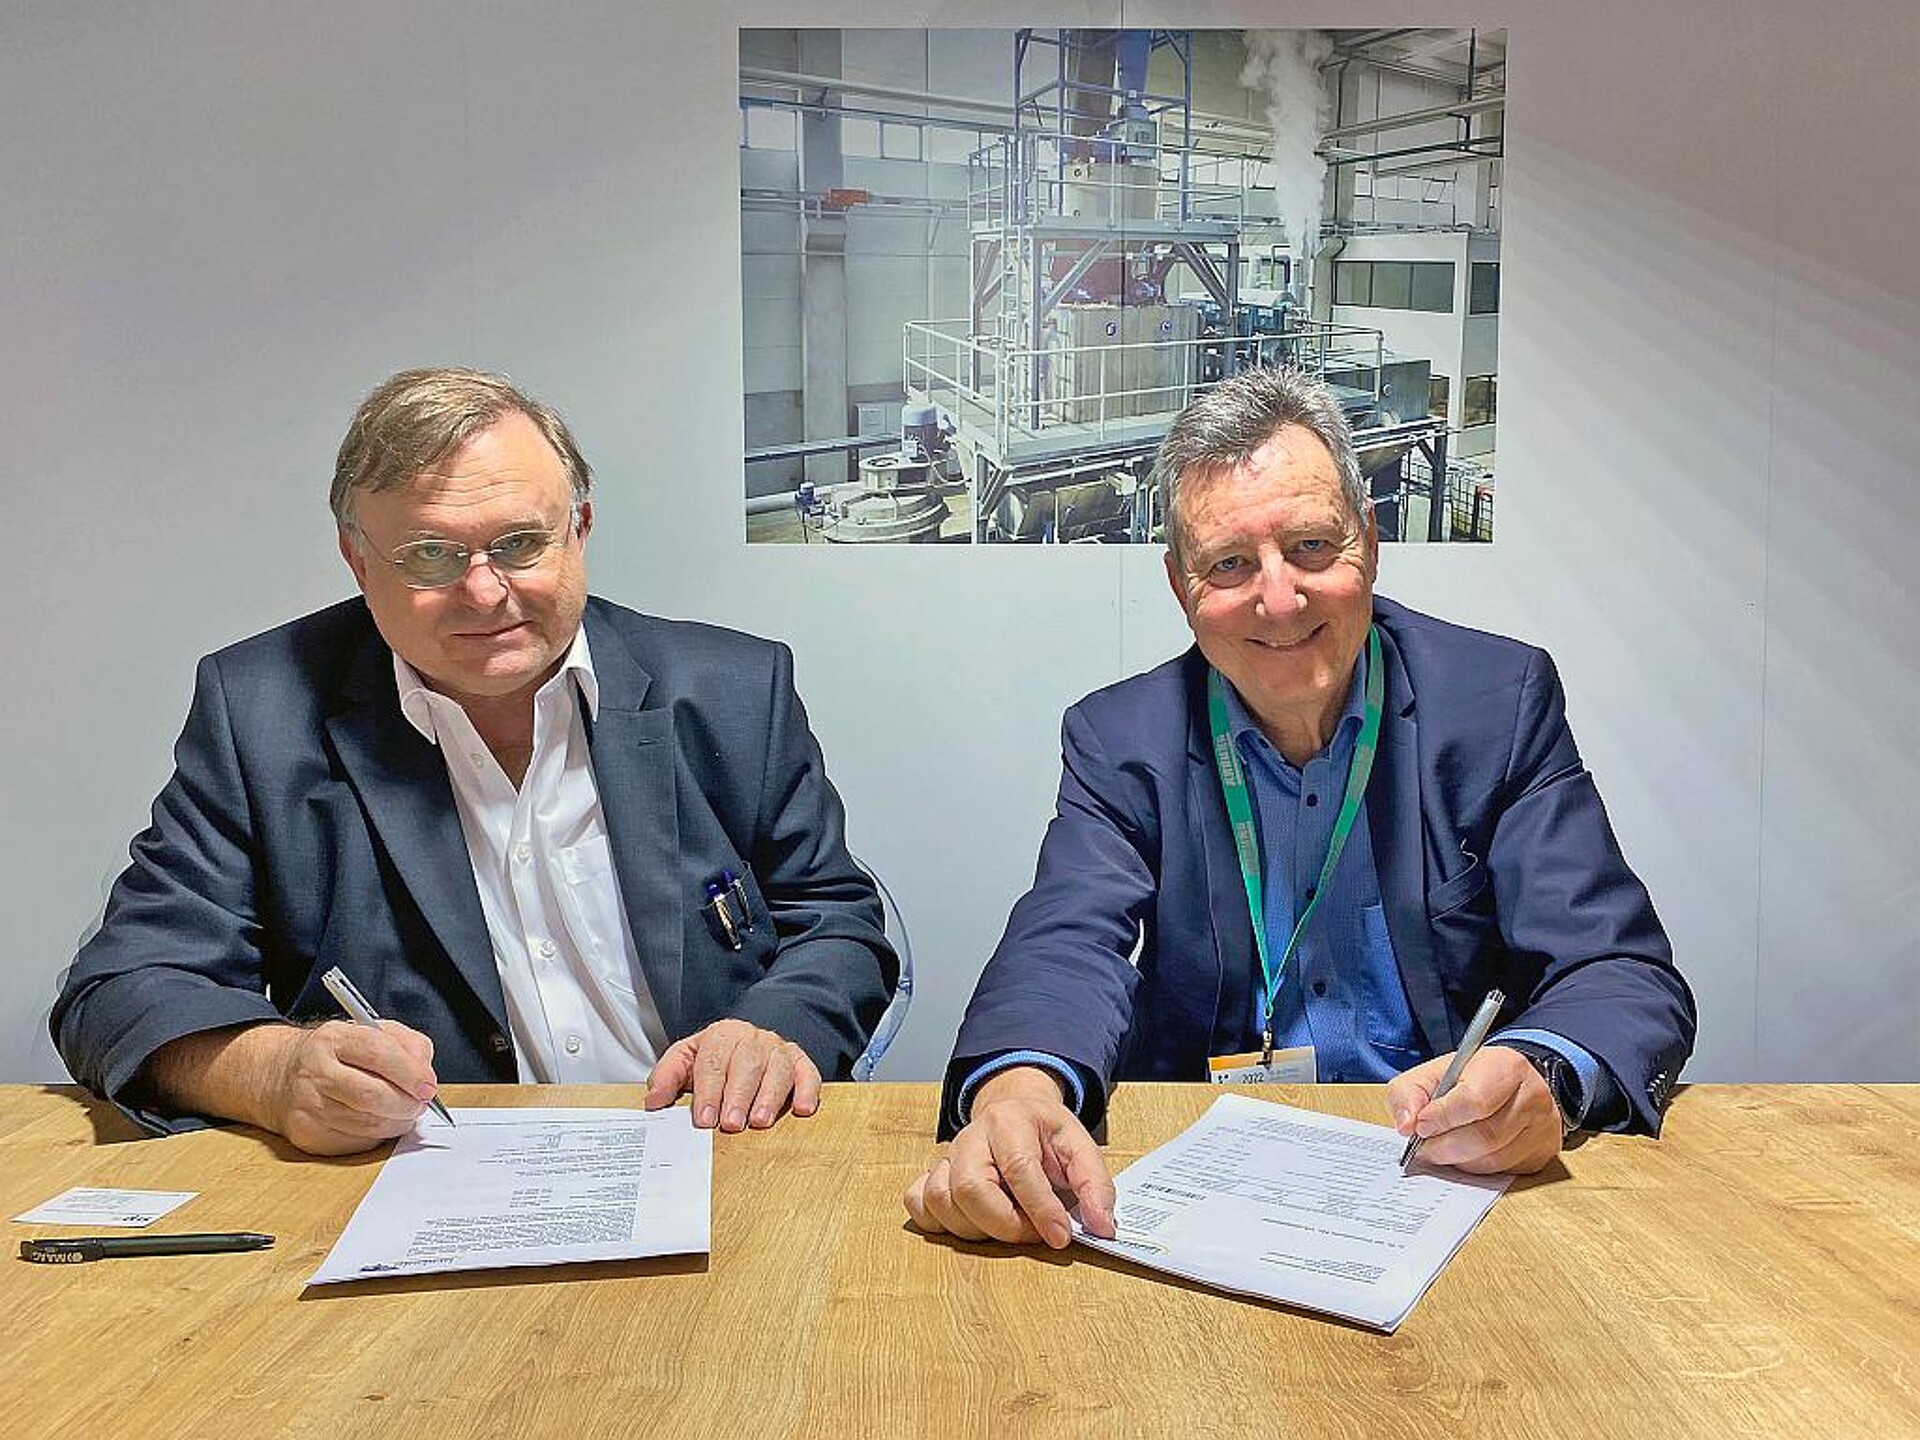 Olivier Vilcot (r.), General Manager der Plastics Recycling Division von Suez, und Werner Herbold, Geschäftsführer des gleichnamigen Unternehmens, bei der Vertragsunterzeichnung. (Foto: Herbold)